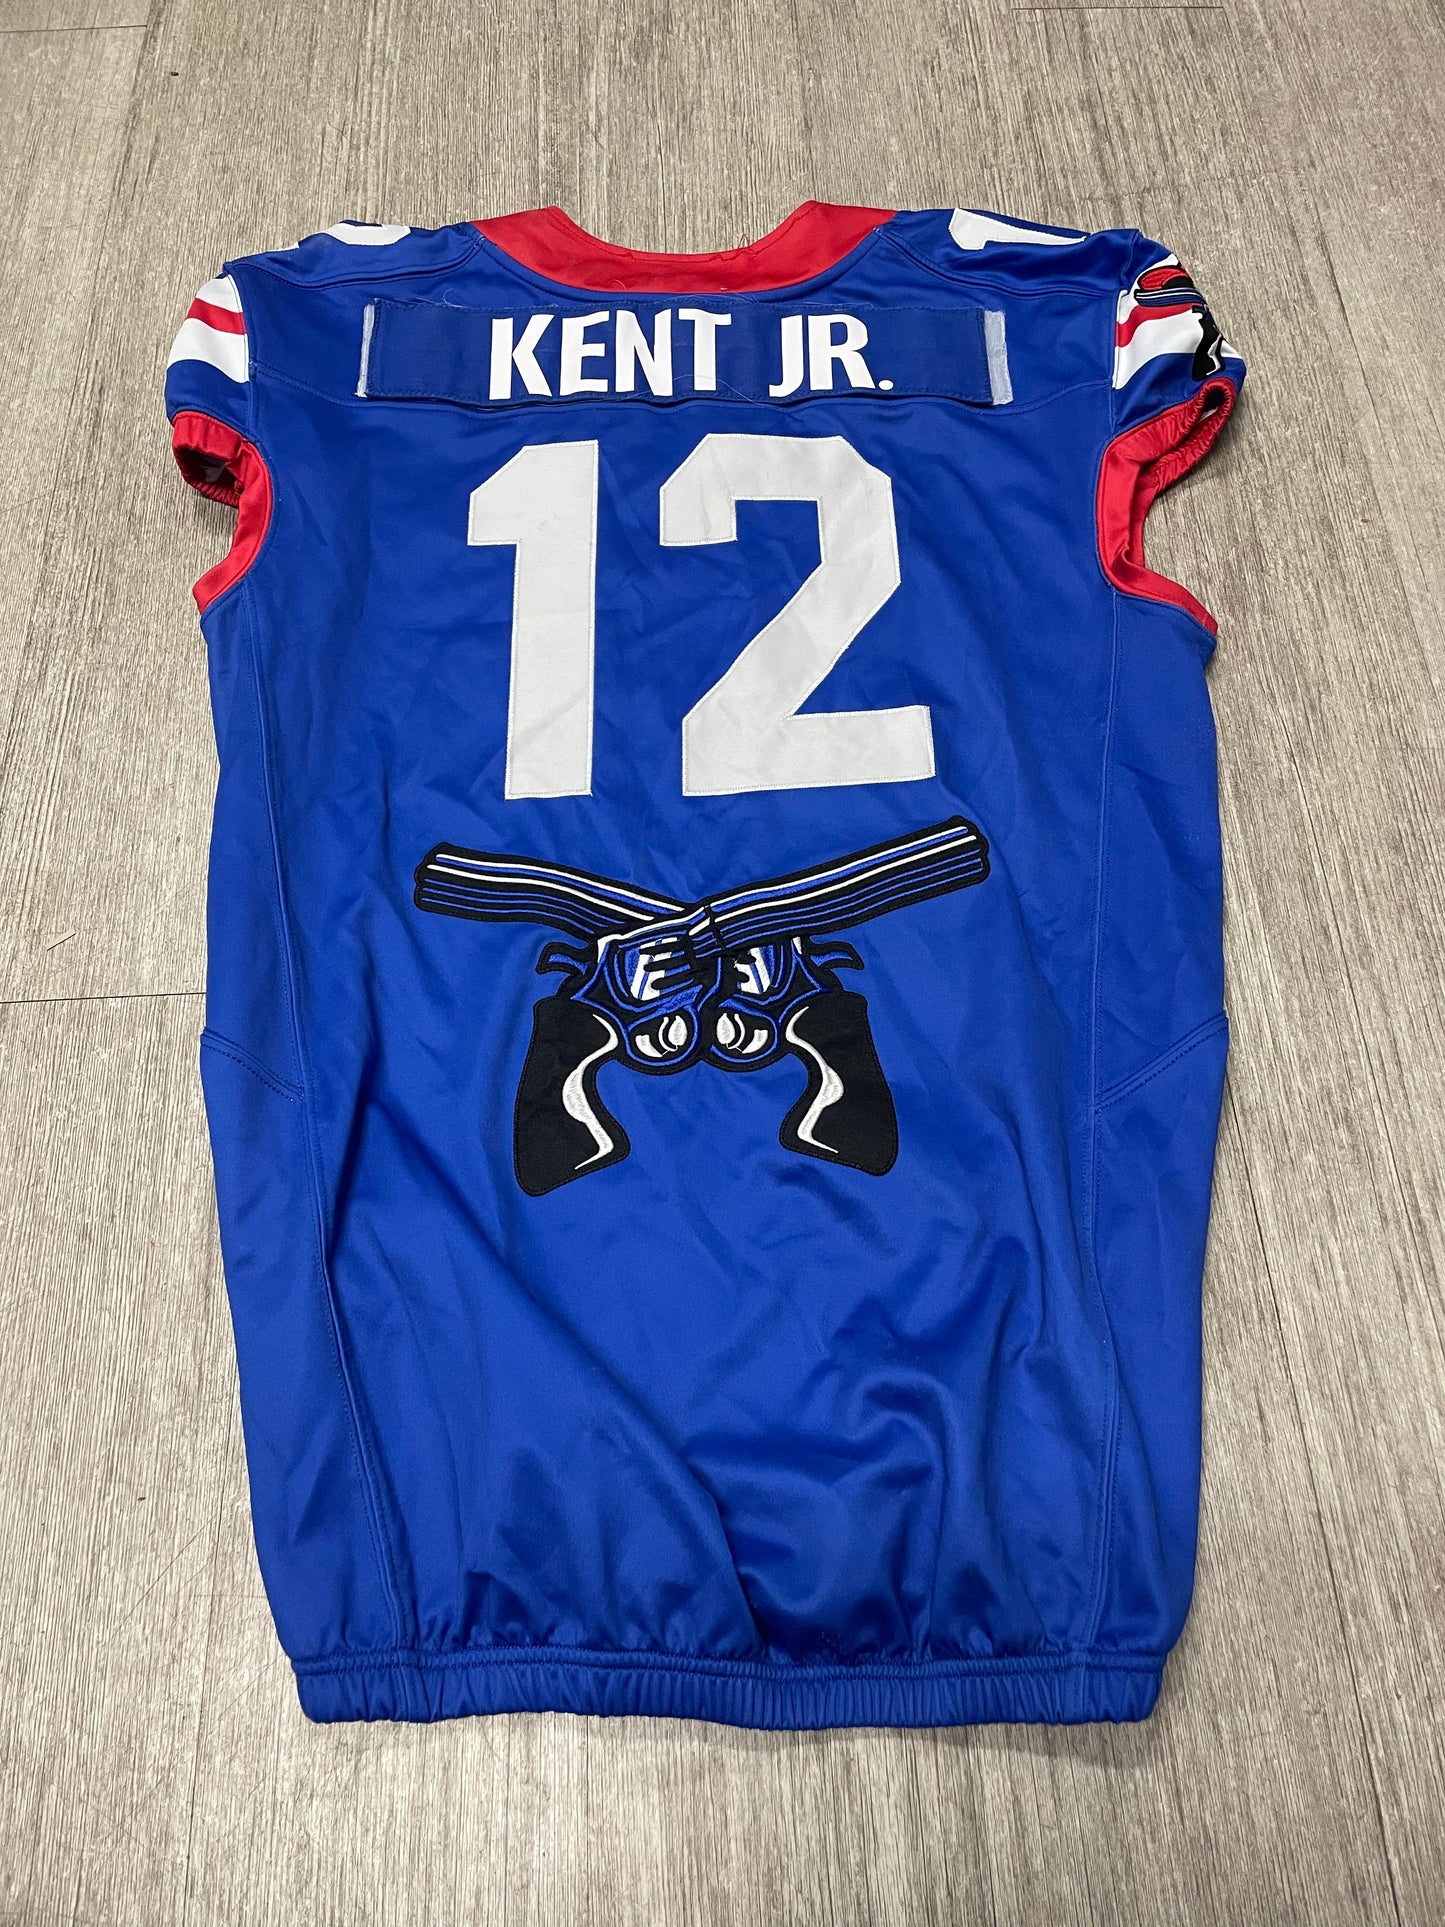 #12 Robert Kent Jr - 2023 Blue Jersey